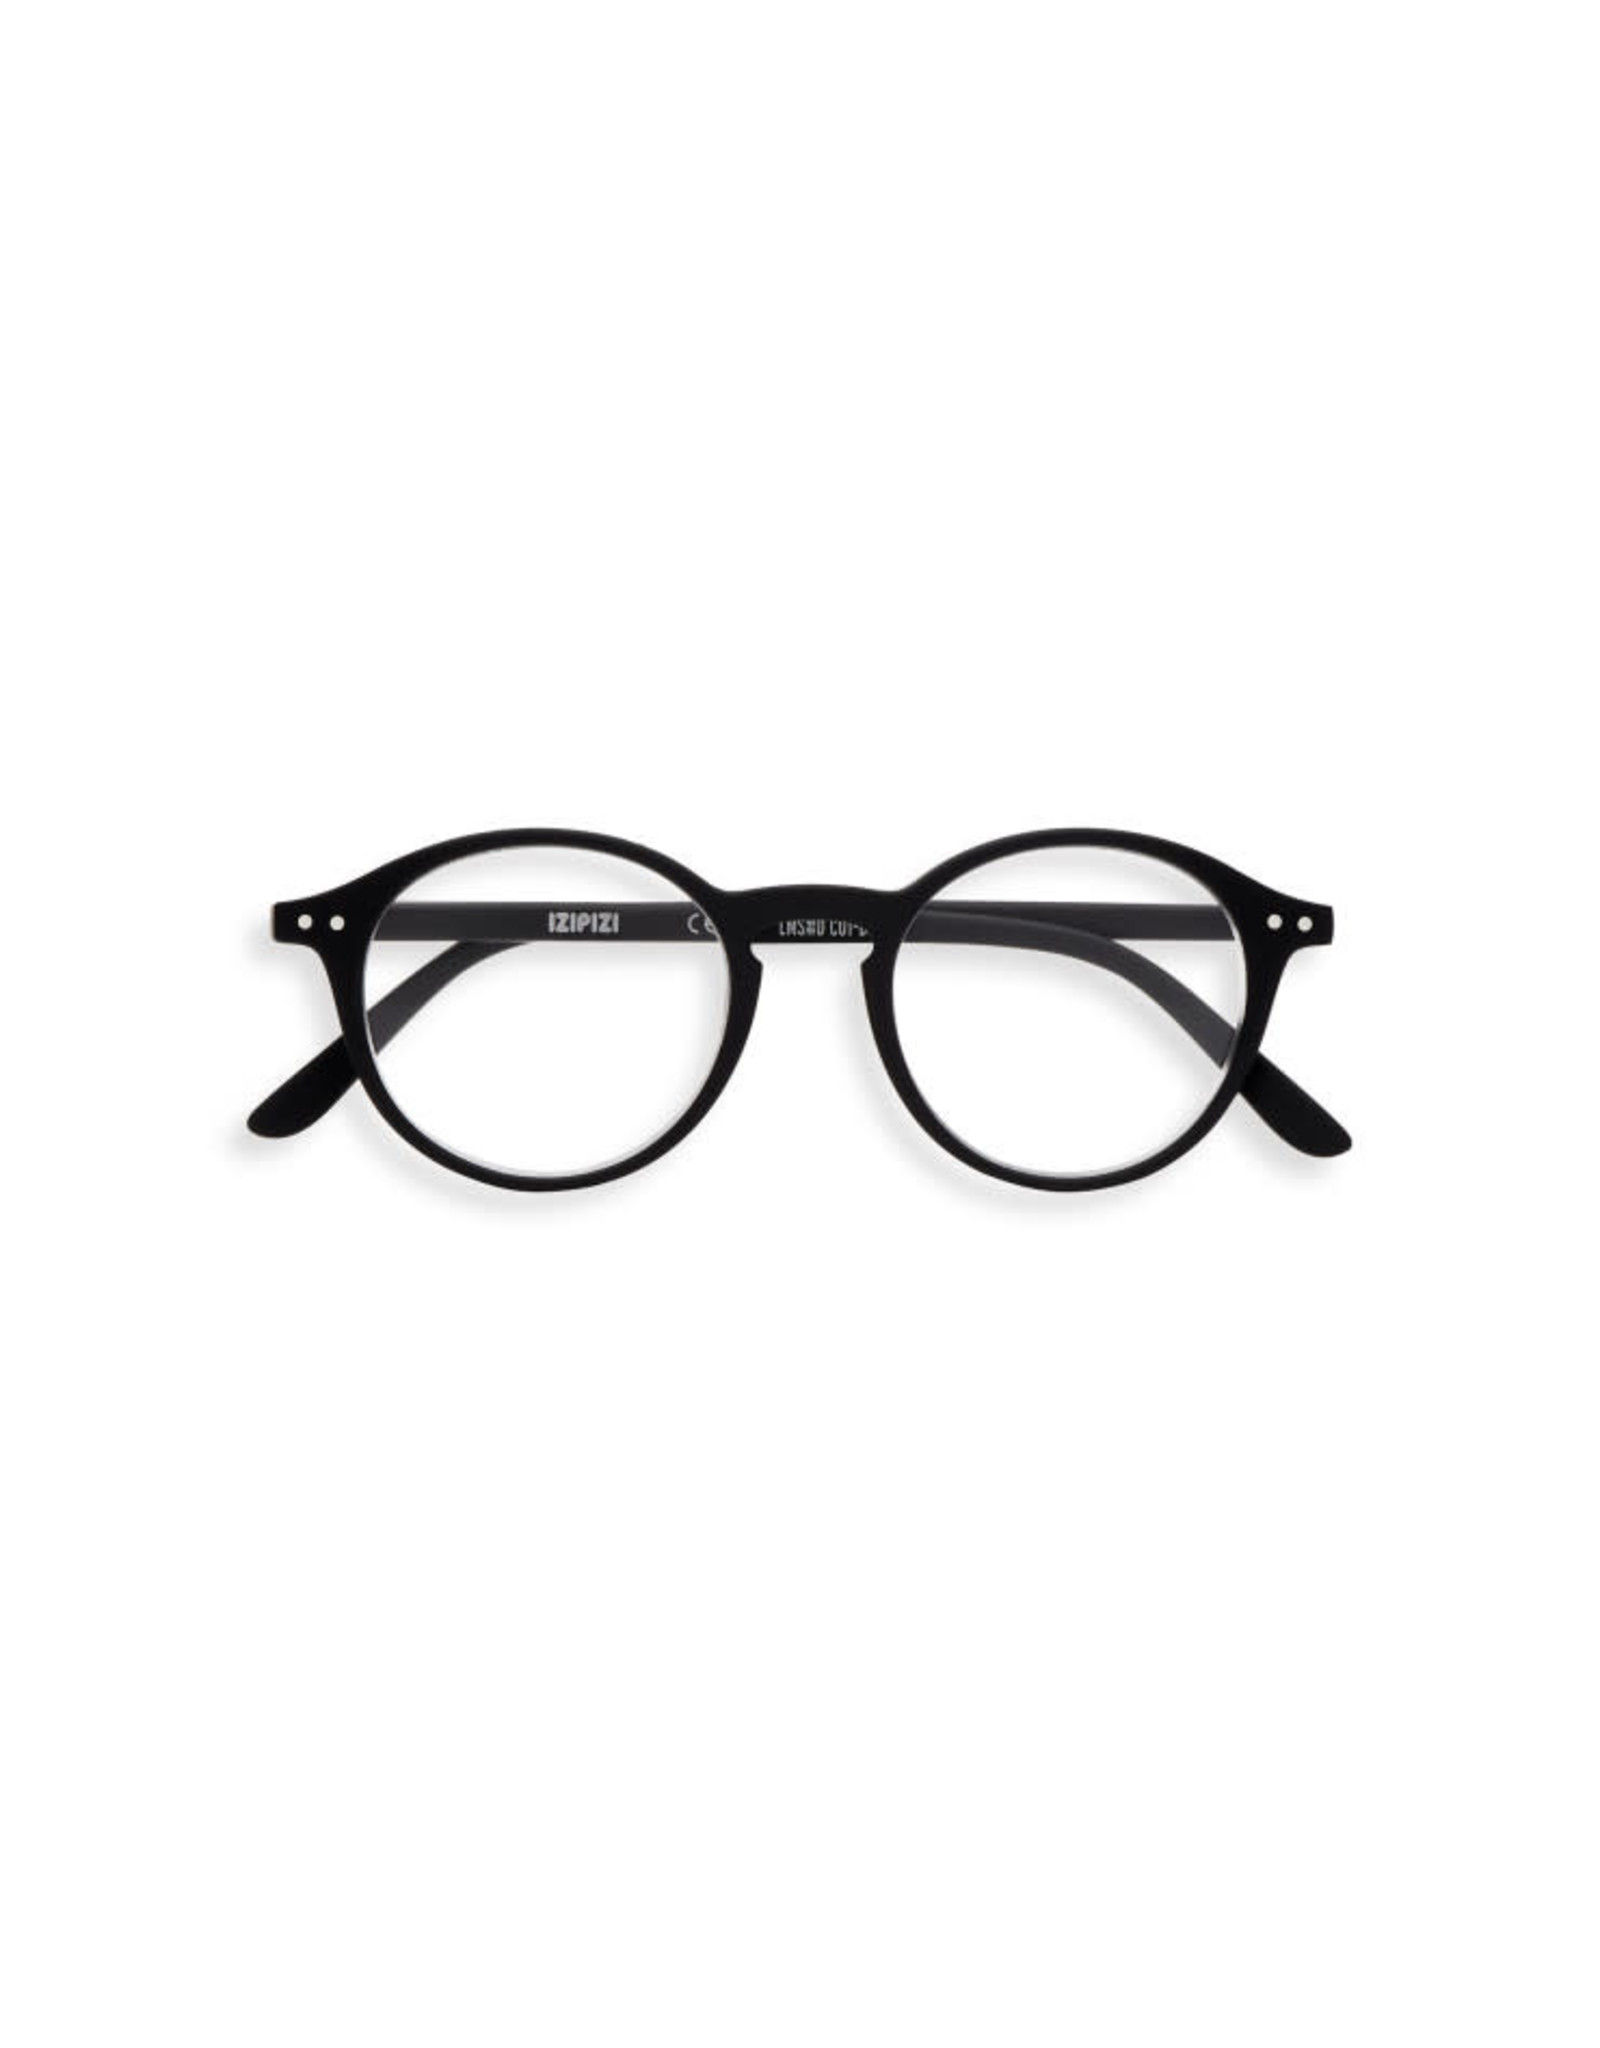 IZIPIZI D Reading Glasses, Black, 2.0